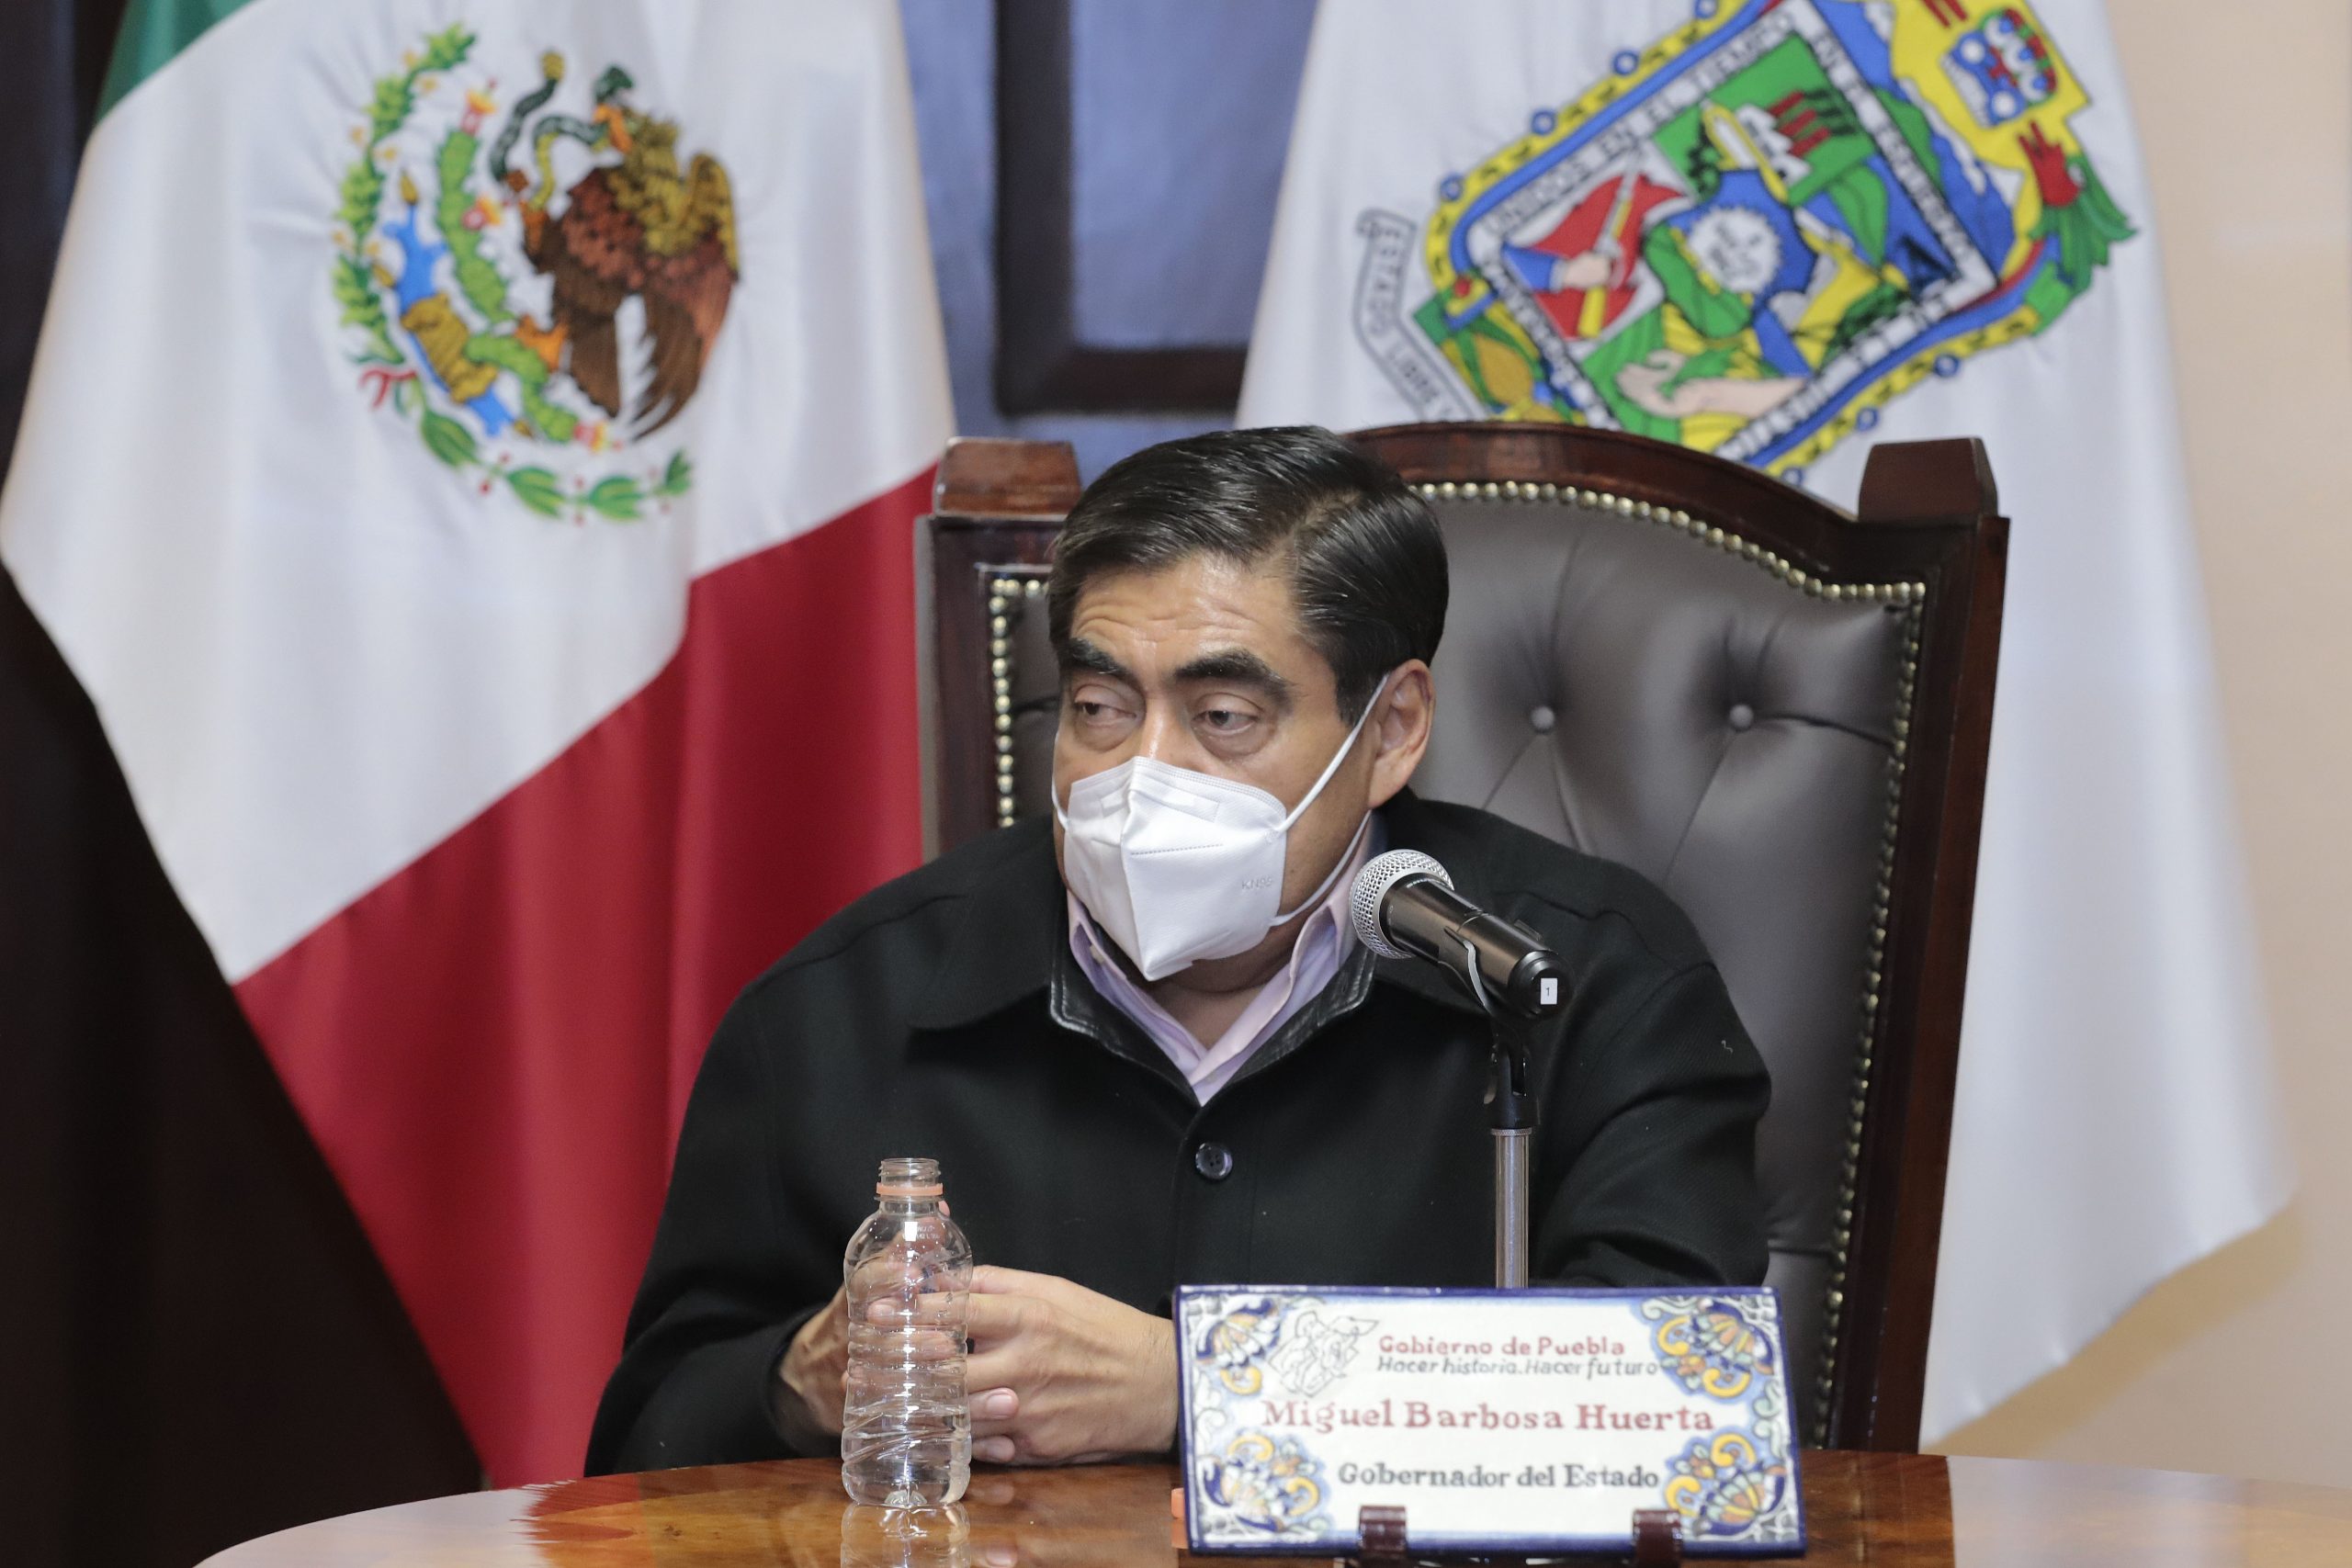 Permanentemente, gobierno de Puebla ejecuta acciones para garantizar seguridad y combatir ilícitos: MBH